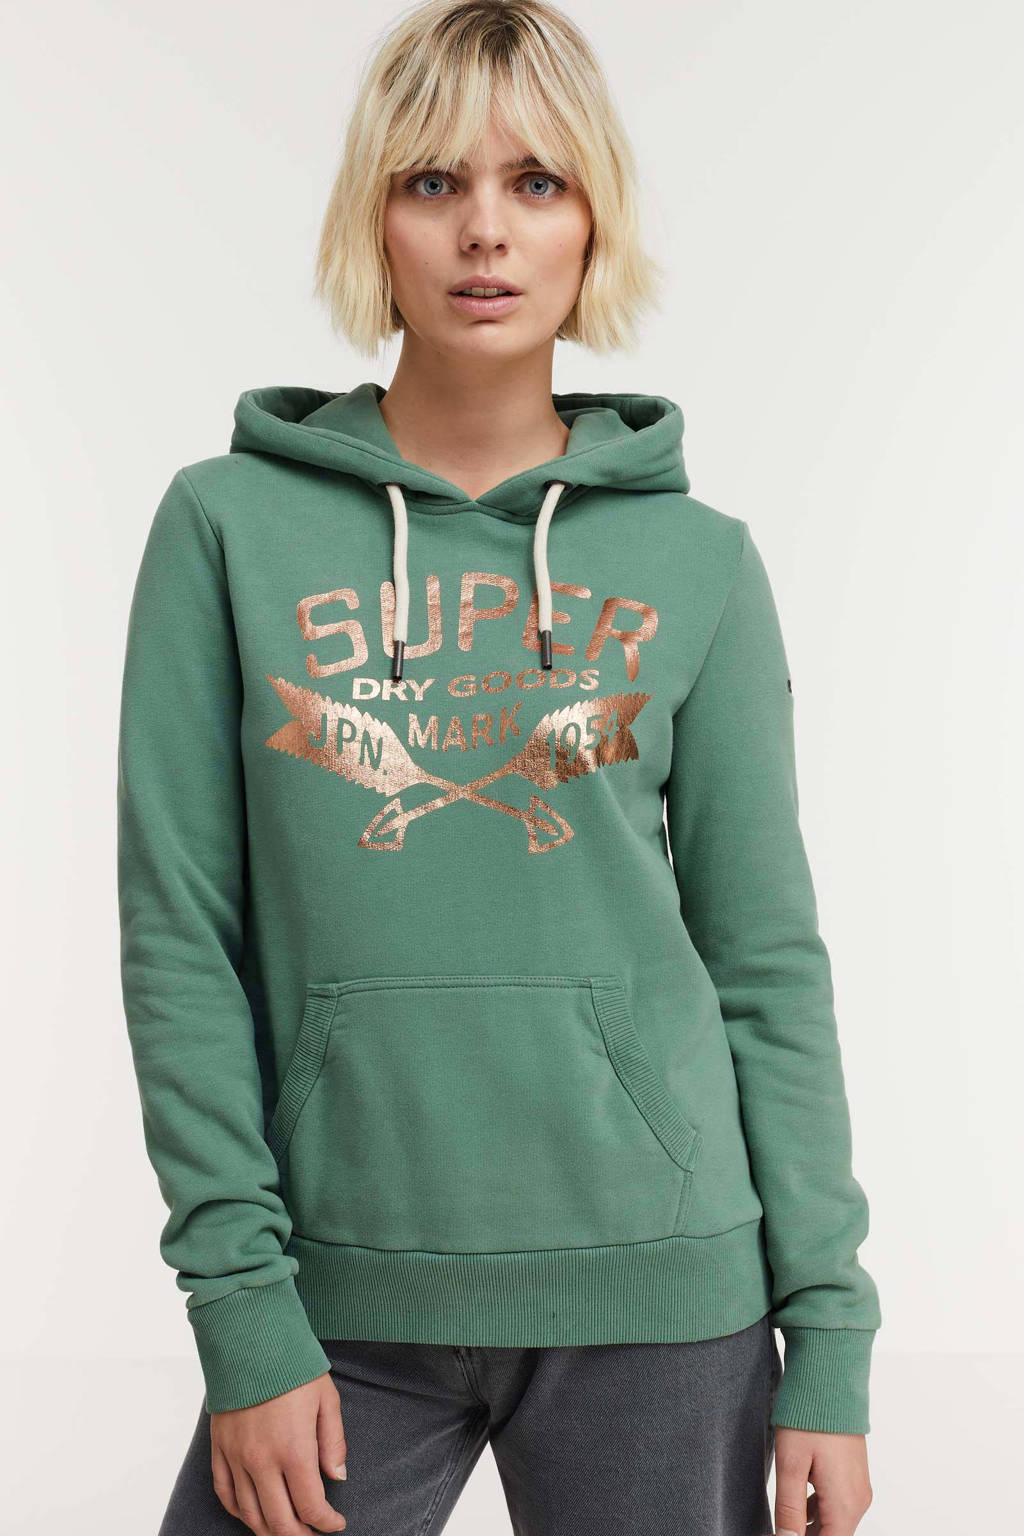 Toeval Pelmel Onderzoek Superdry hoodie met logo groen/brons | wehkamp